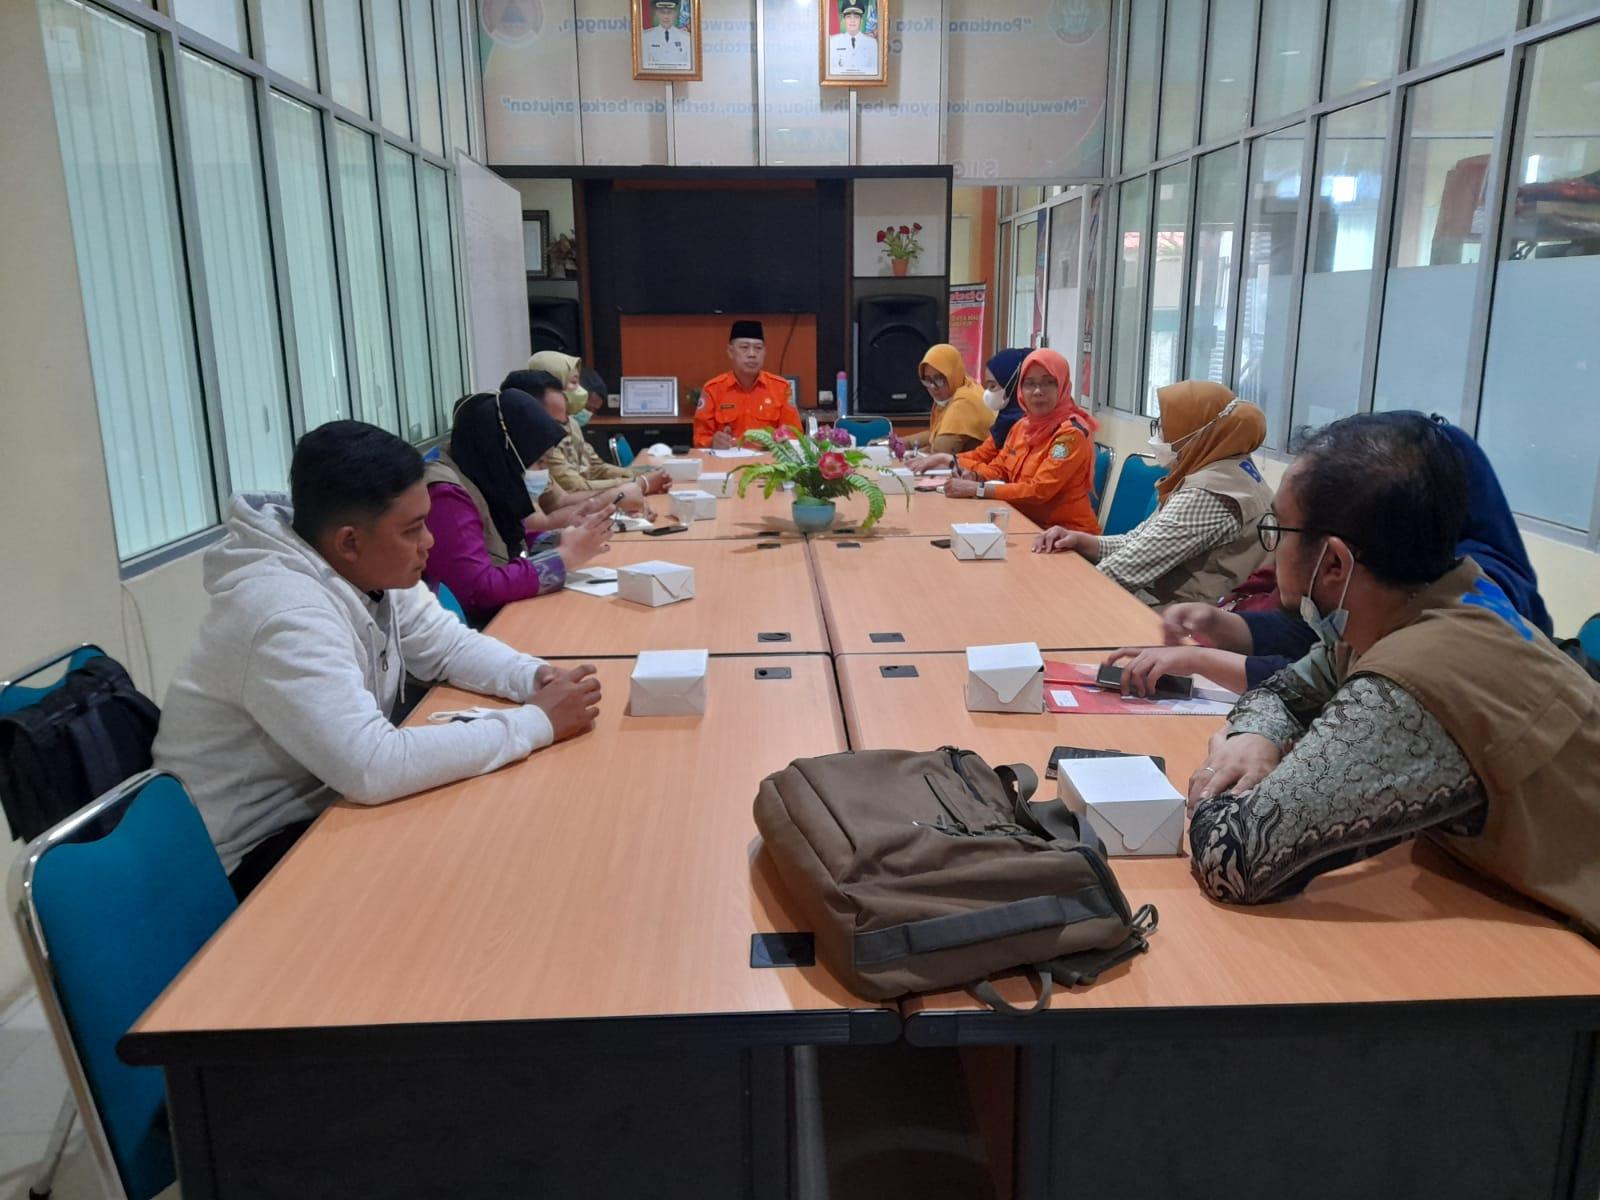 Selasa, 15 November 2022 telah dilakukan kegiatan Monitoring dan Evaluasi yang dipimpin oleh Kepala Pelaksana BPBD Kota Pontianak atas kegiatan sosialisasi penanganan Penyakit Mulut dan Kuku yang telah dilaksanakan selama 30 hari di Kalimantan Barat oleh 